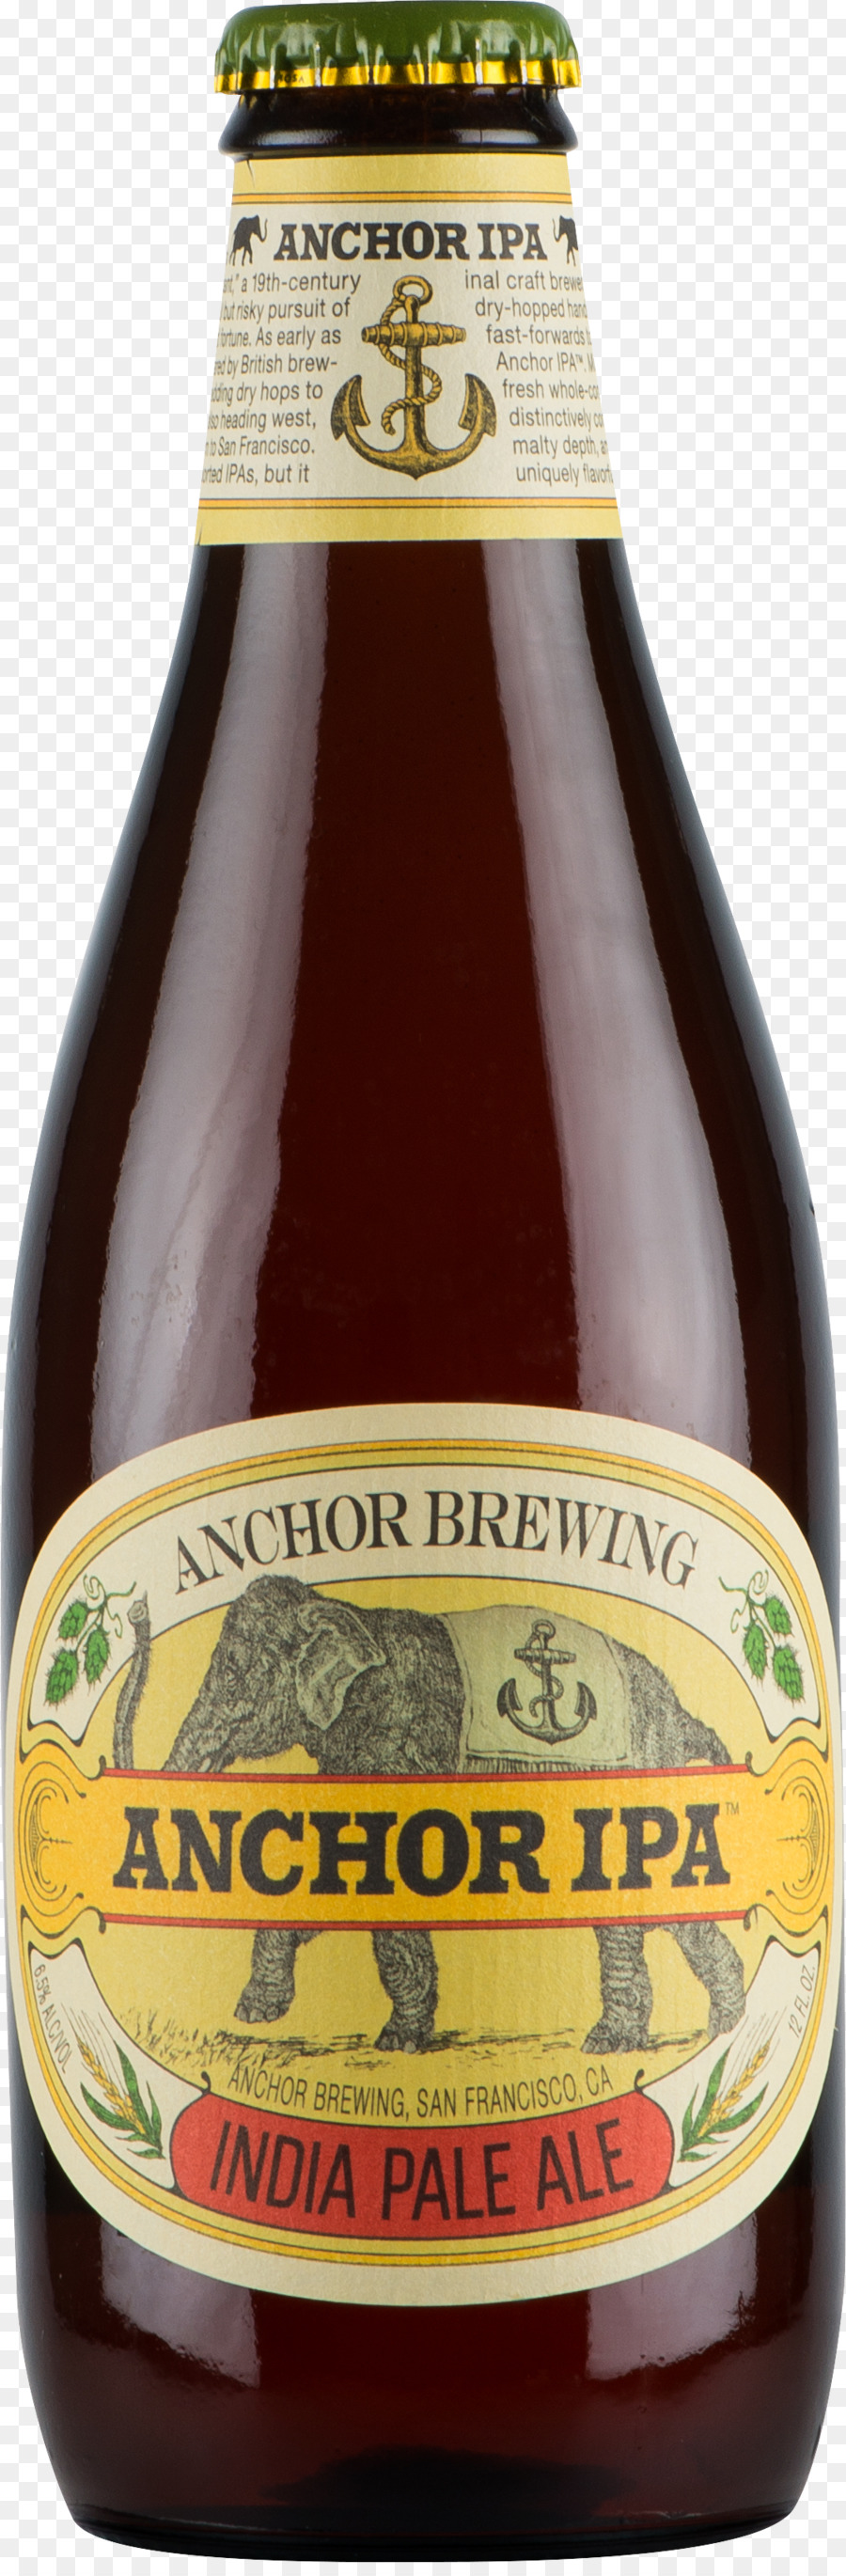 India pale ale Anchor Brewing Company birra di Frumento - India Pale Ale